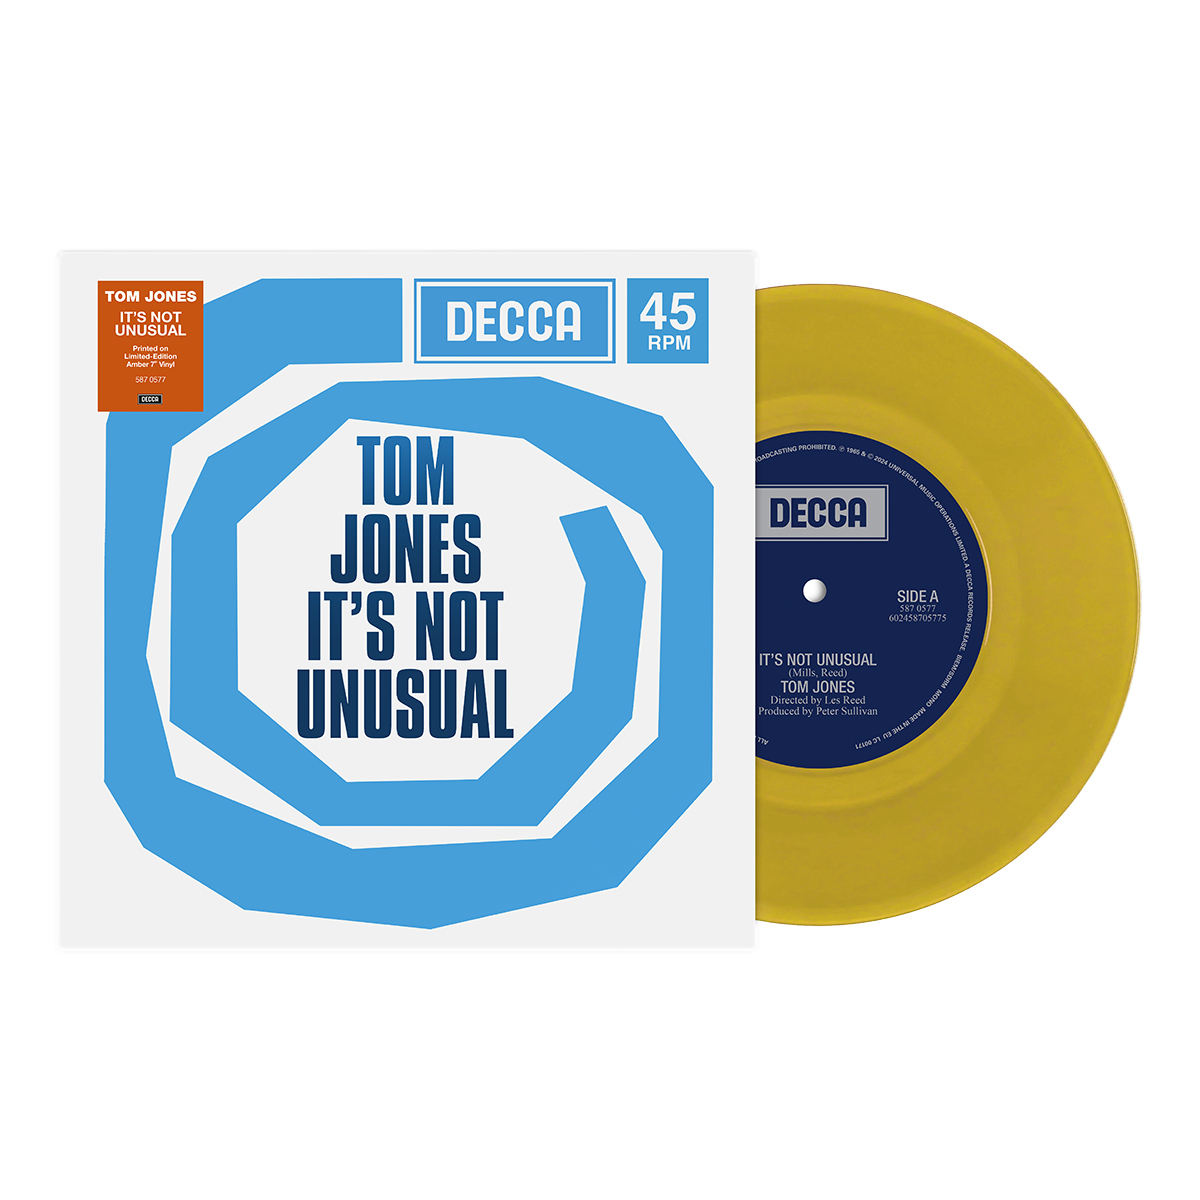 Tom Jones - It's Not Unusual: 7" Single [RSD24]